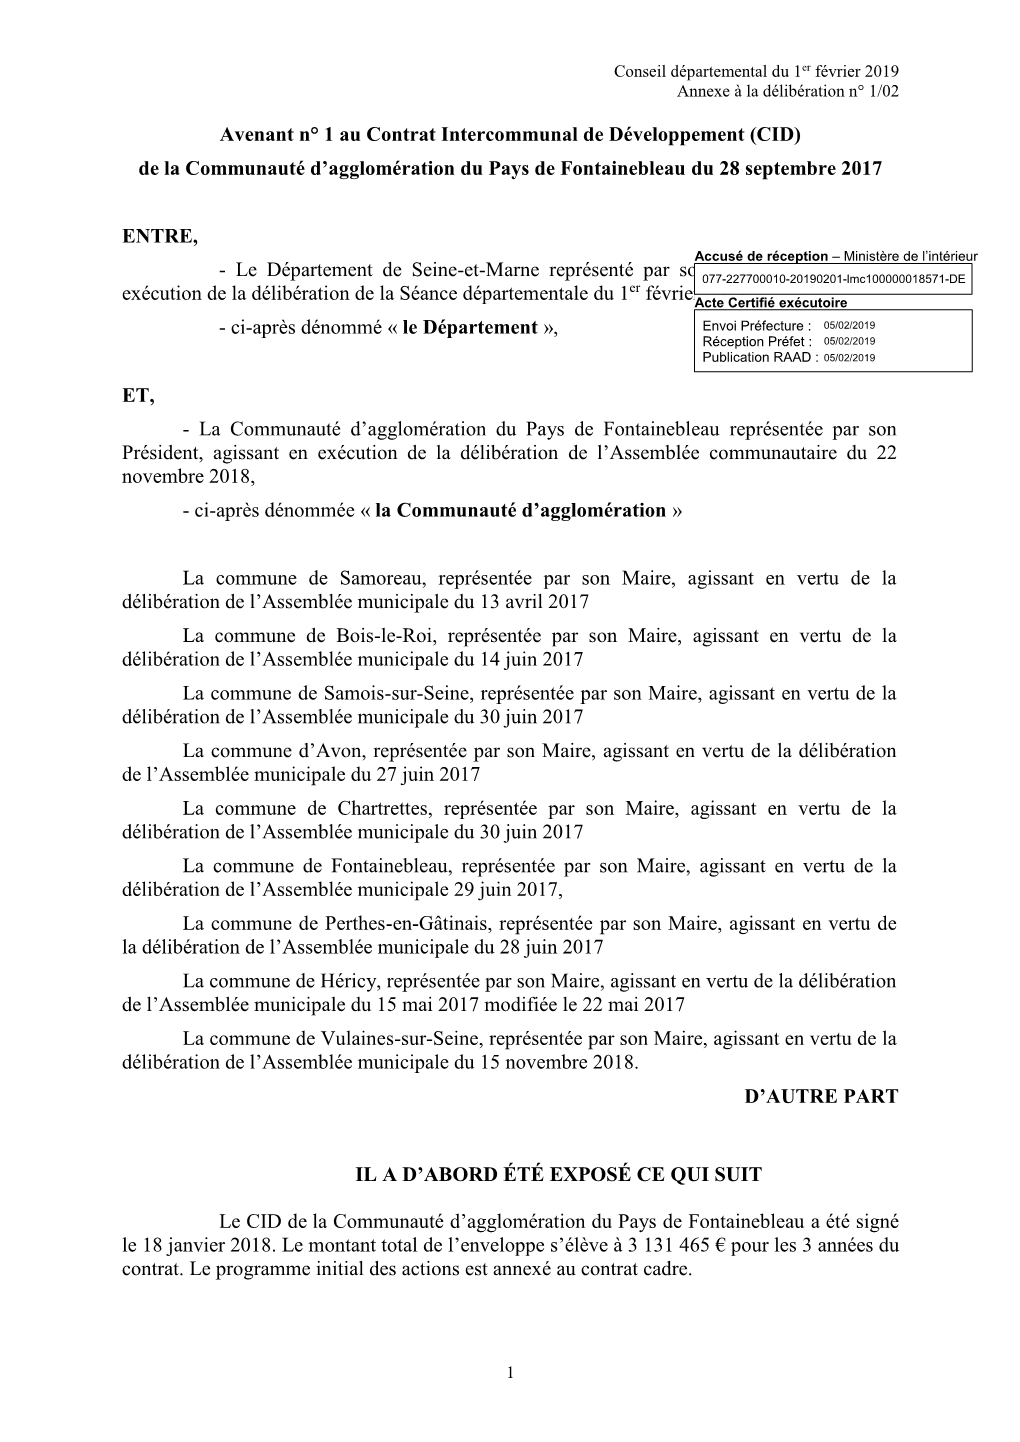 Avenant N° 1 Au Contrat Intercommunal De Développement (CID) De La Communauté D’Agglomération Du Pays De Fontainebleau Du 28 Septembre 2017